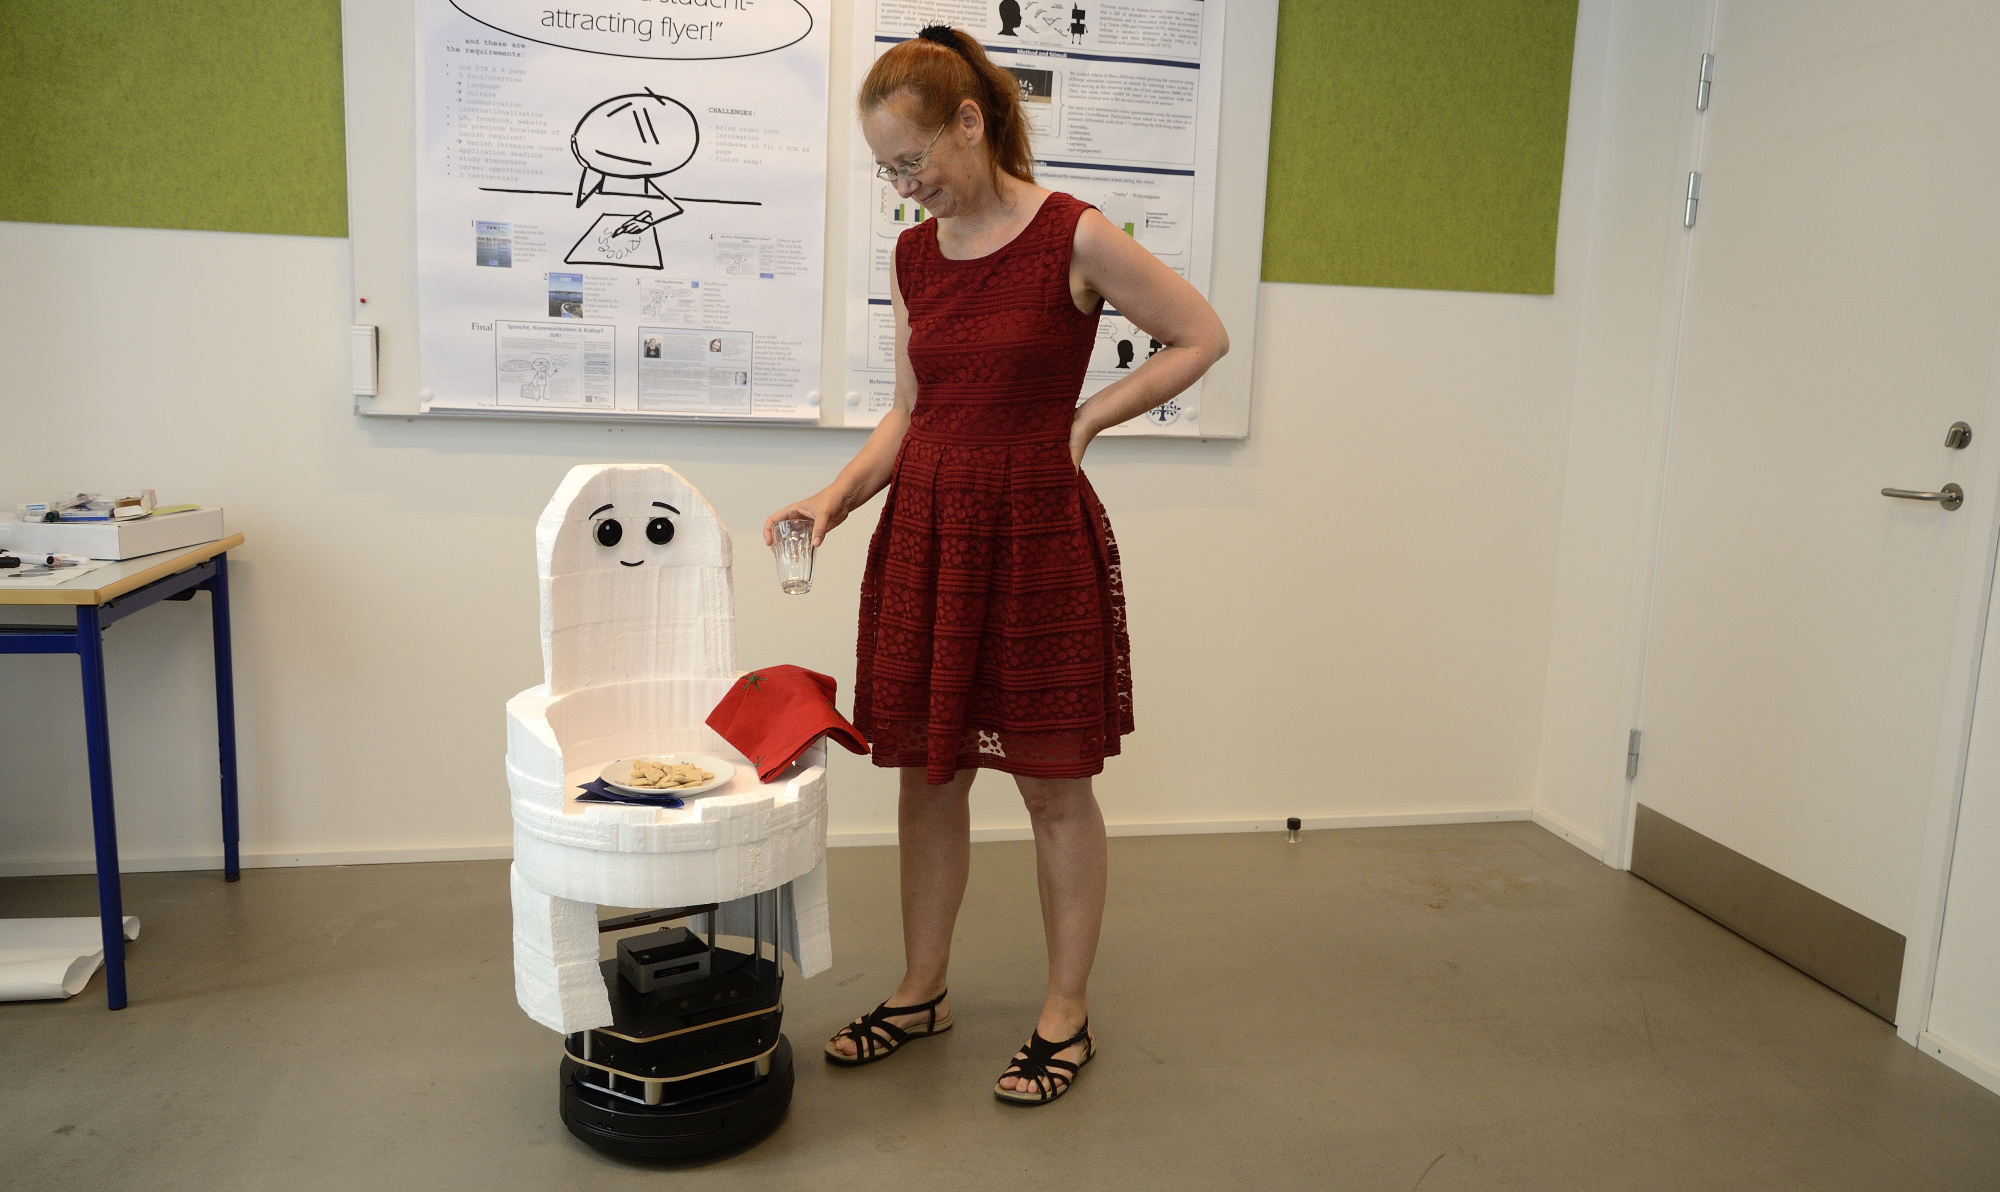 Casper Turtlebot, presented by Kerstin Fischer